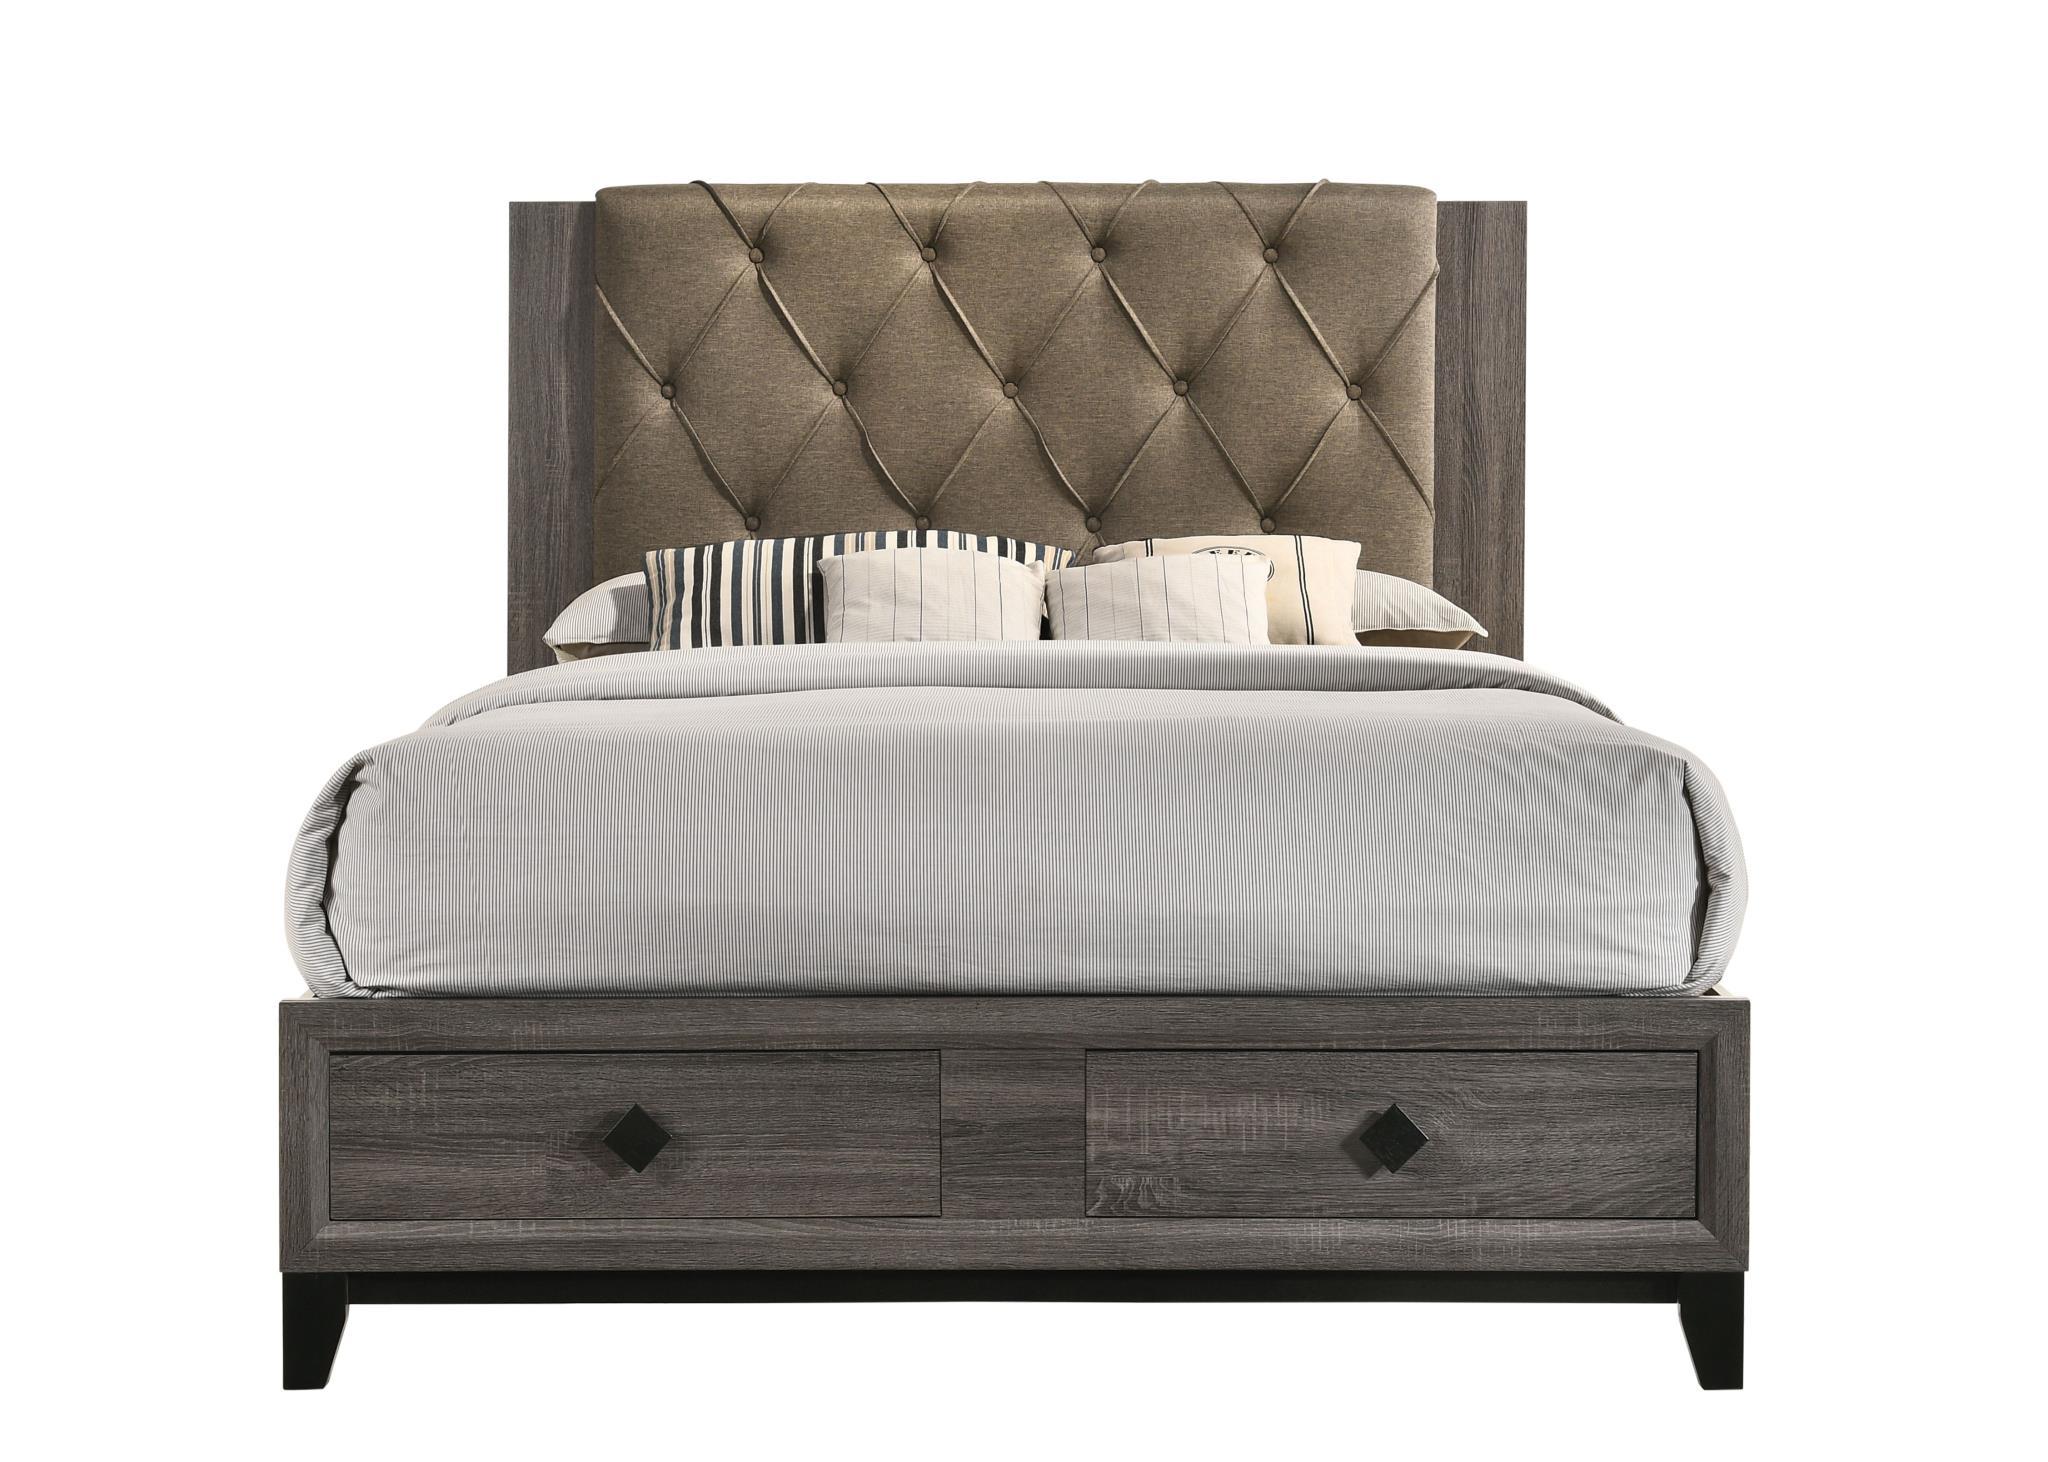 

    
Transitional Fabric & Rustic Gray Oak Queen Bedroom Set 3PCS by Acme Avantika-27670Q-S
